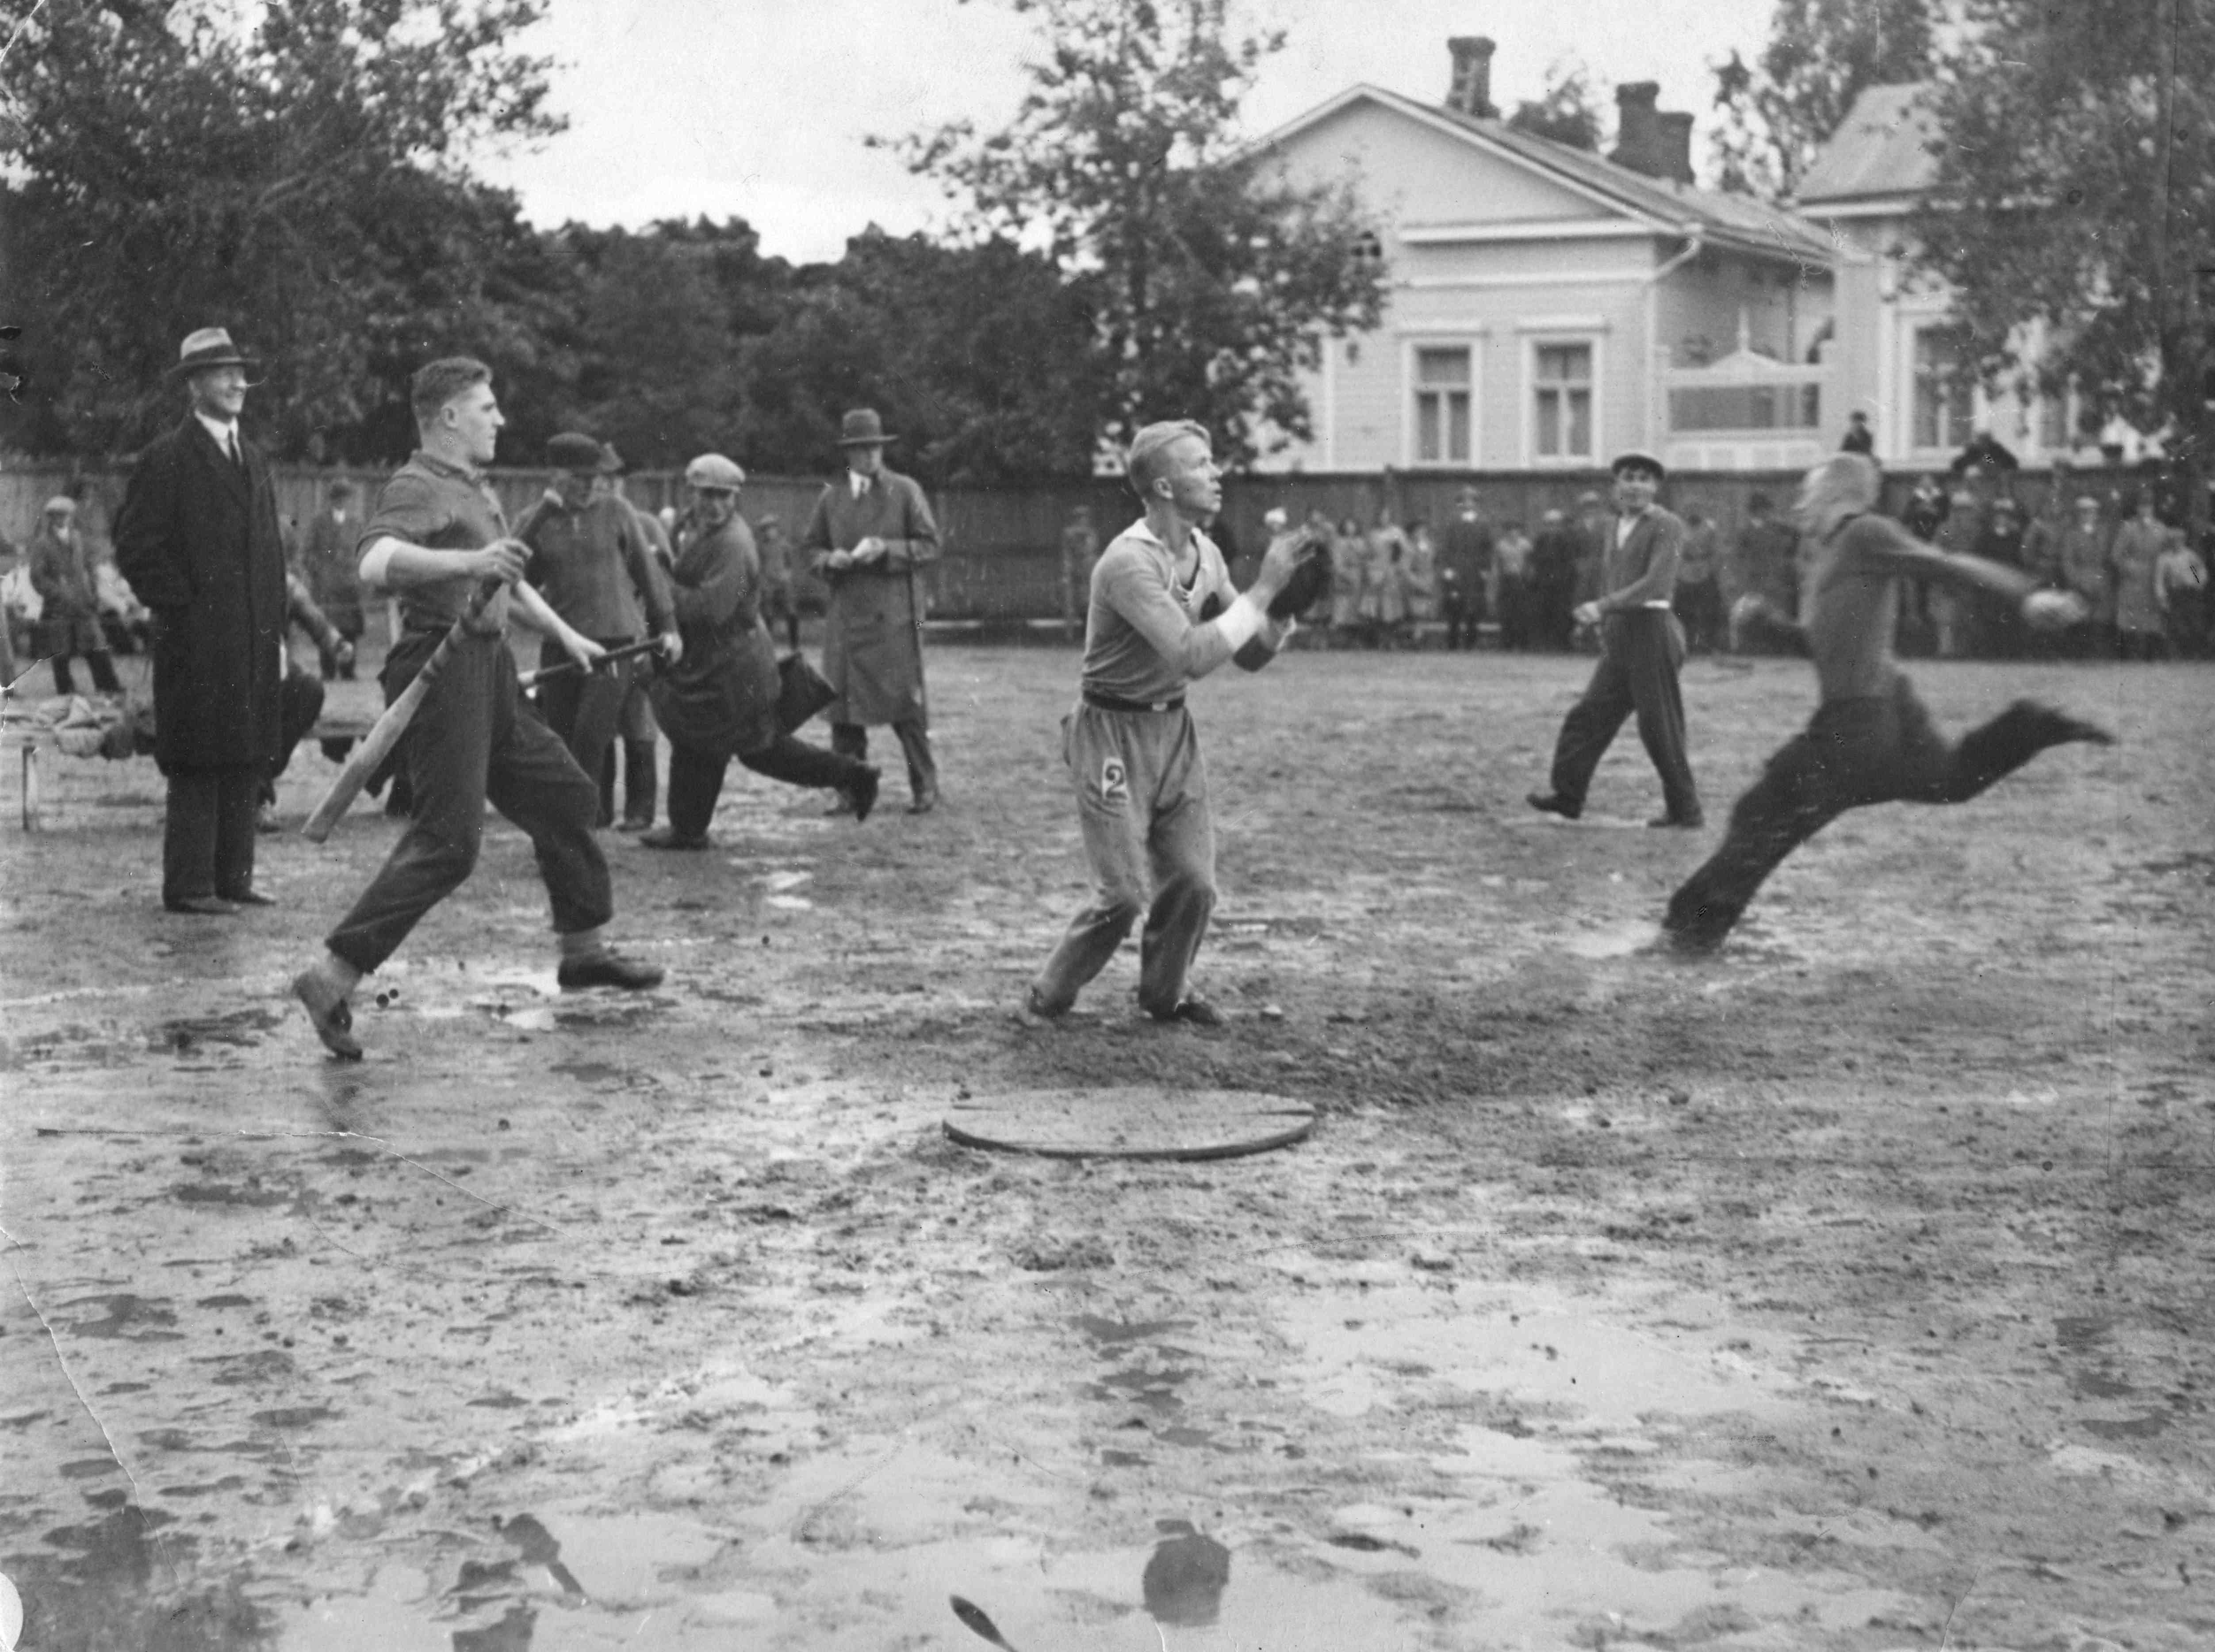 Pesäpallosta tuli 1930-luvun alkuun mennessä suosittu peli suomenkielisessä Suomessa. Heikot kenttäolot eivät estäneet pelaamista. Kuvan ottelu käytiin Viipurissa. (Suomen Urheilumuseo)